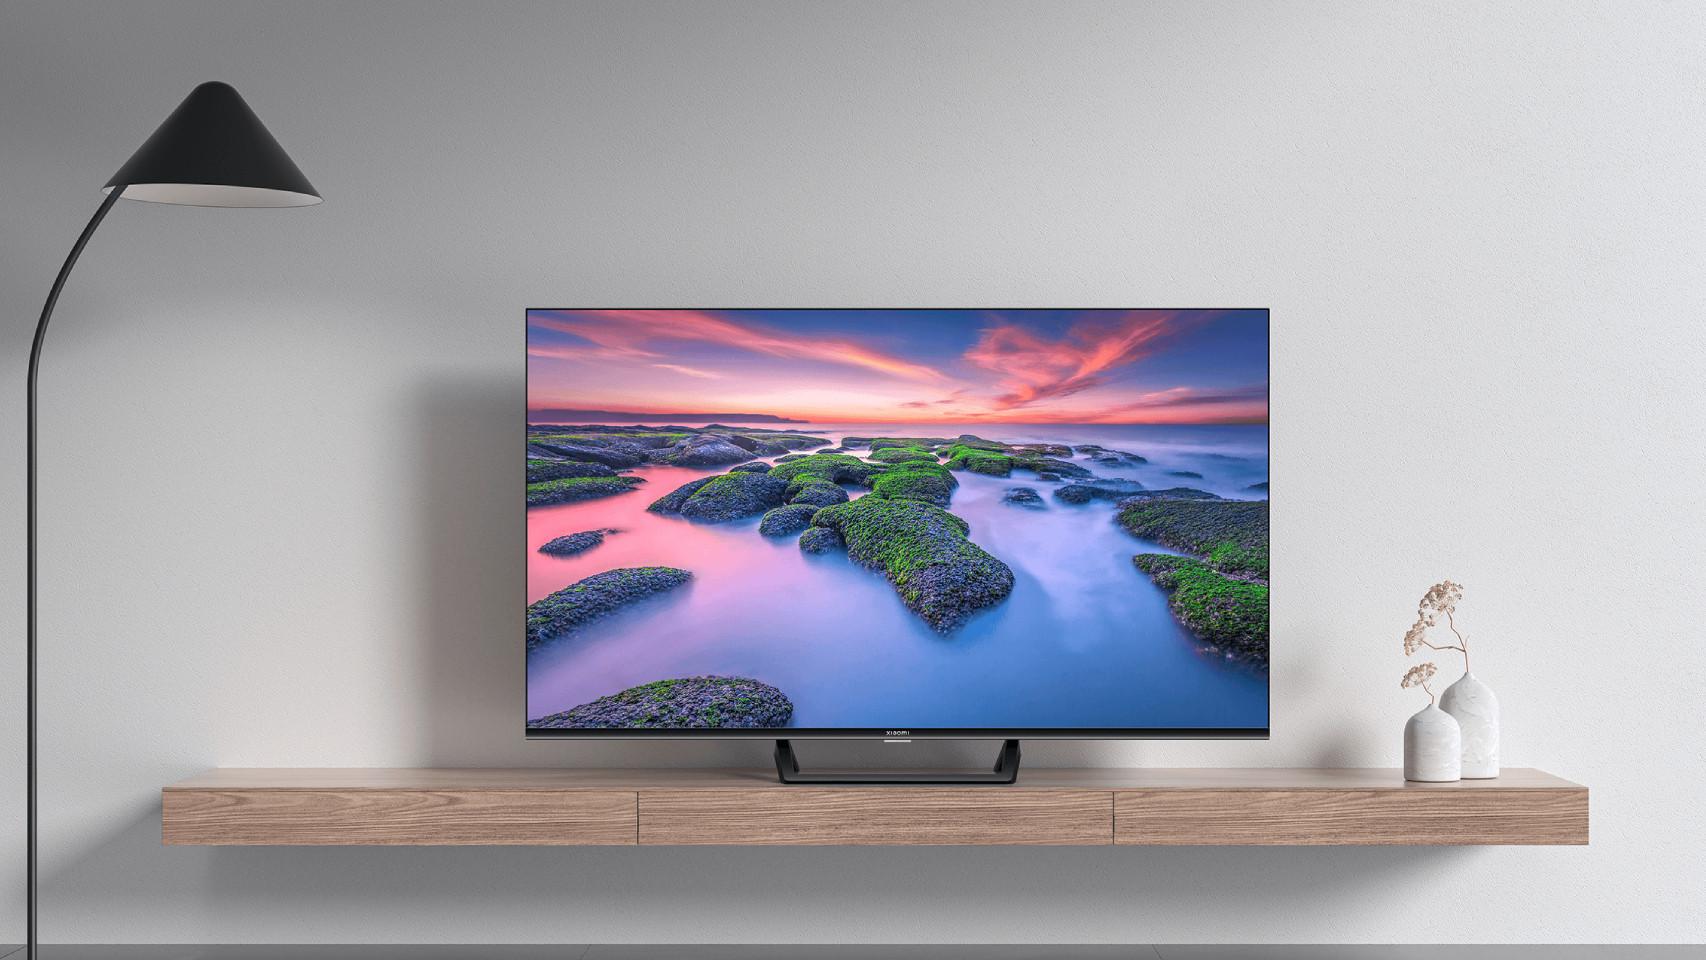 Qué televisor con Android TV comprar, ¿cuál es mejor?